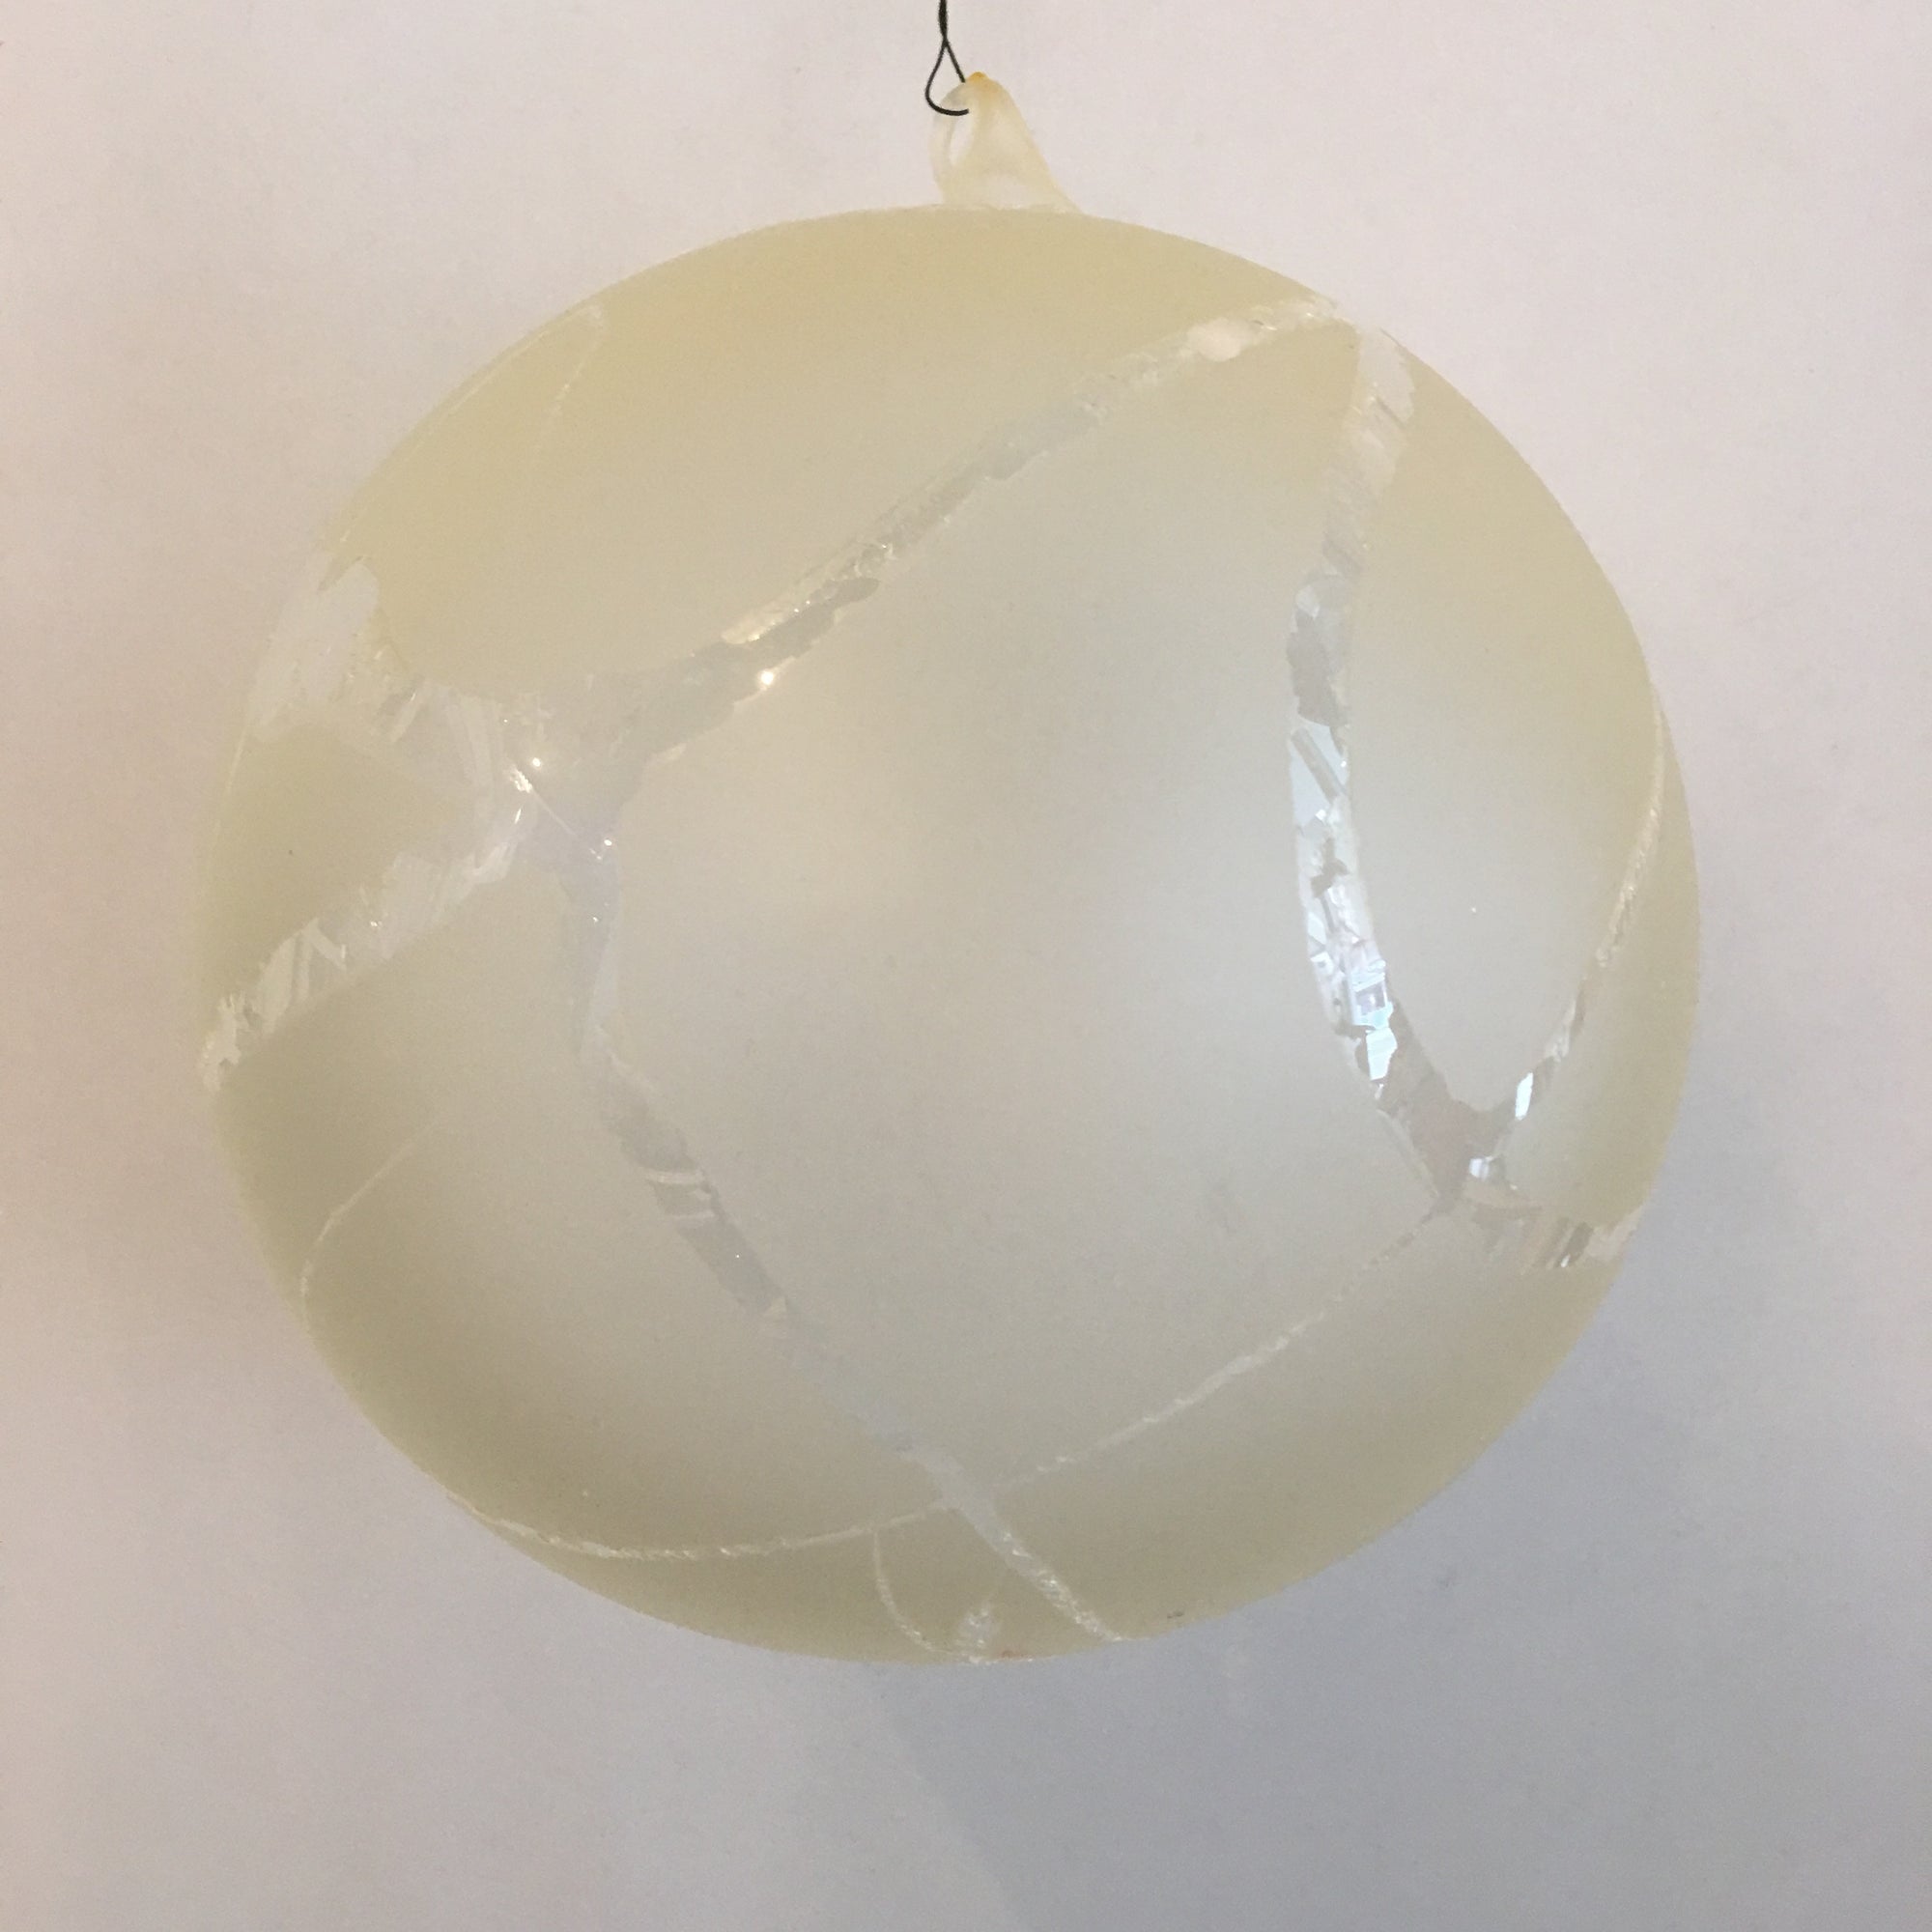  Jim Marvin "Winter Twig" Glass Ball Ornament - Cream, JM-Jim Marvin, Putti Fine Furnishings